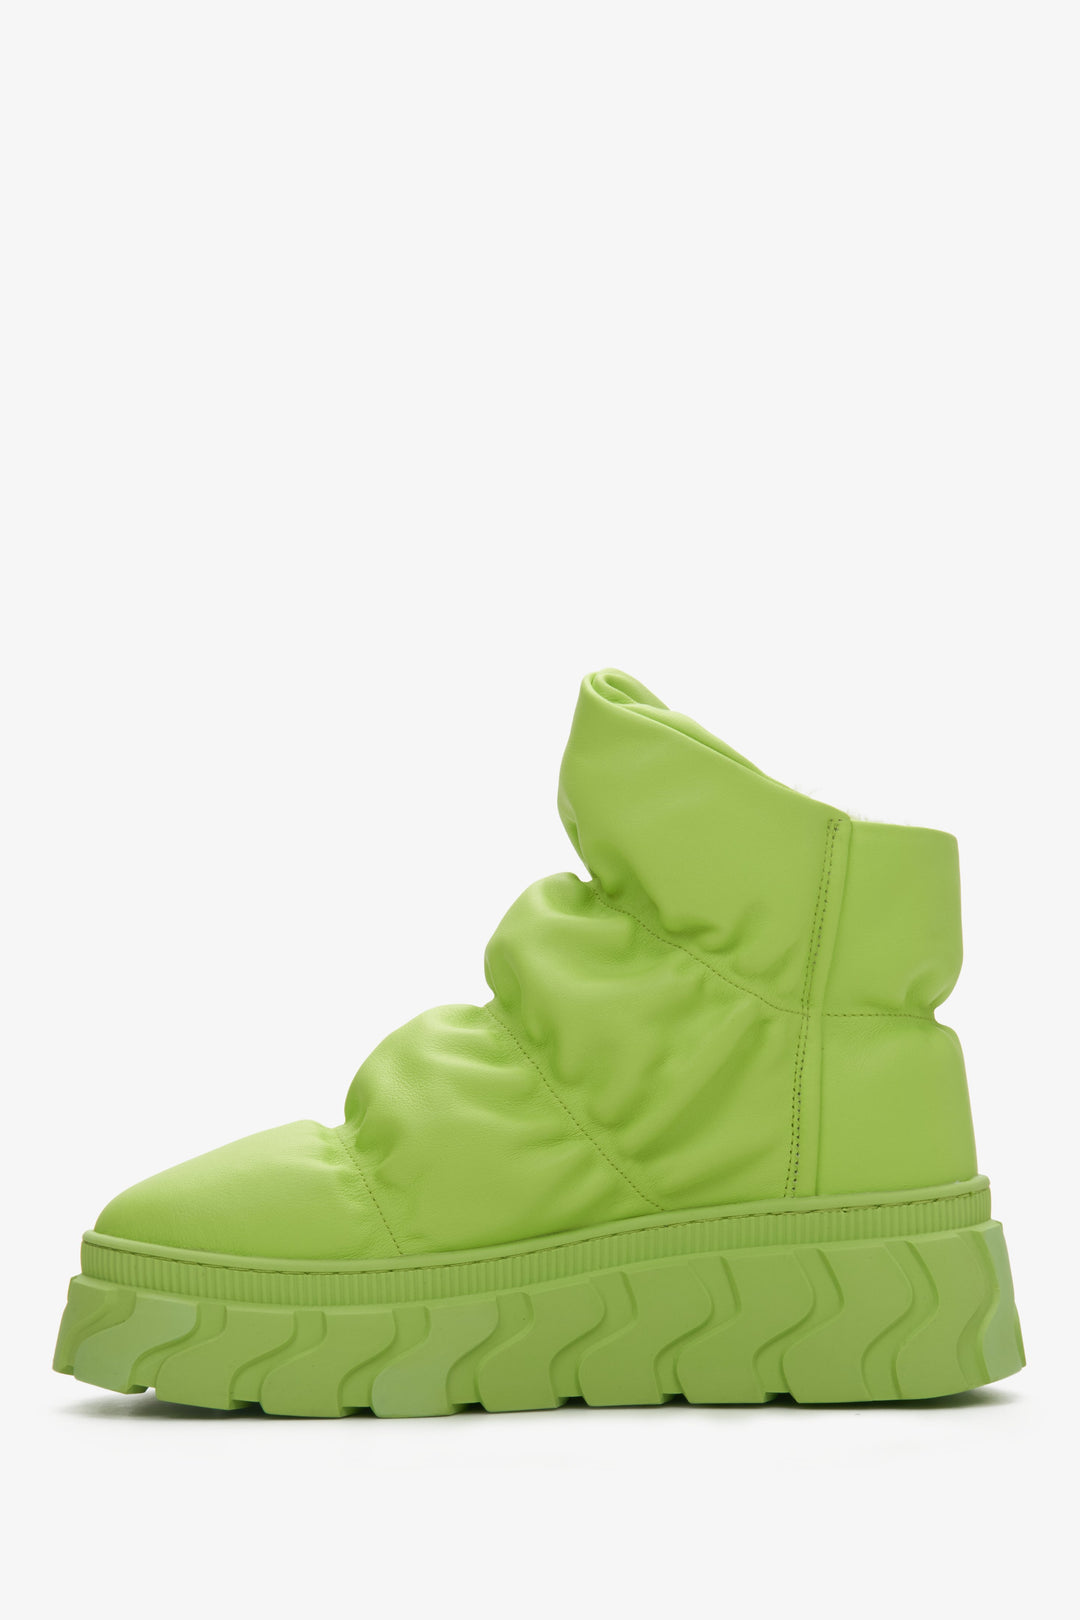 Damskie, skórzane śniegowce damskie Estro w kolorze zielonym - profil buta.